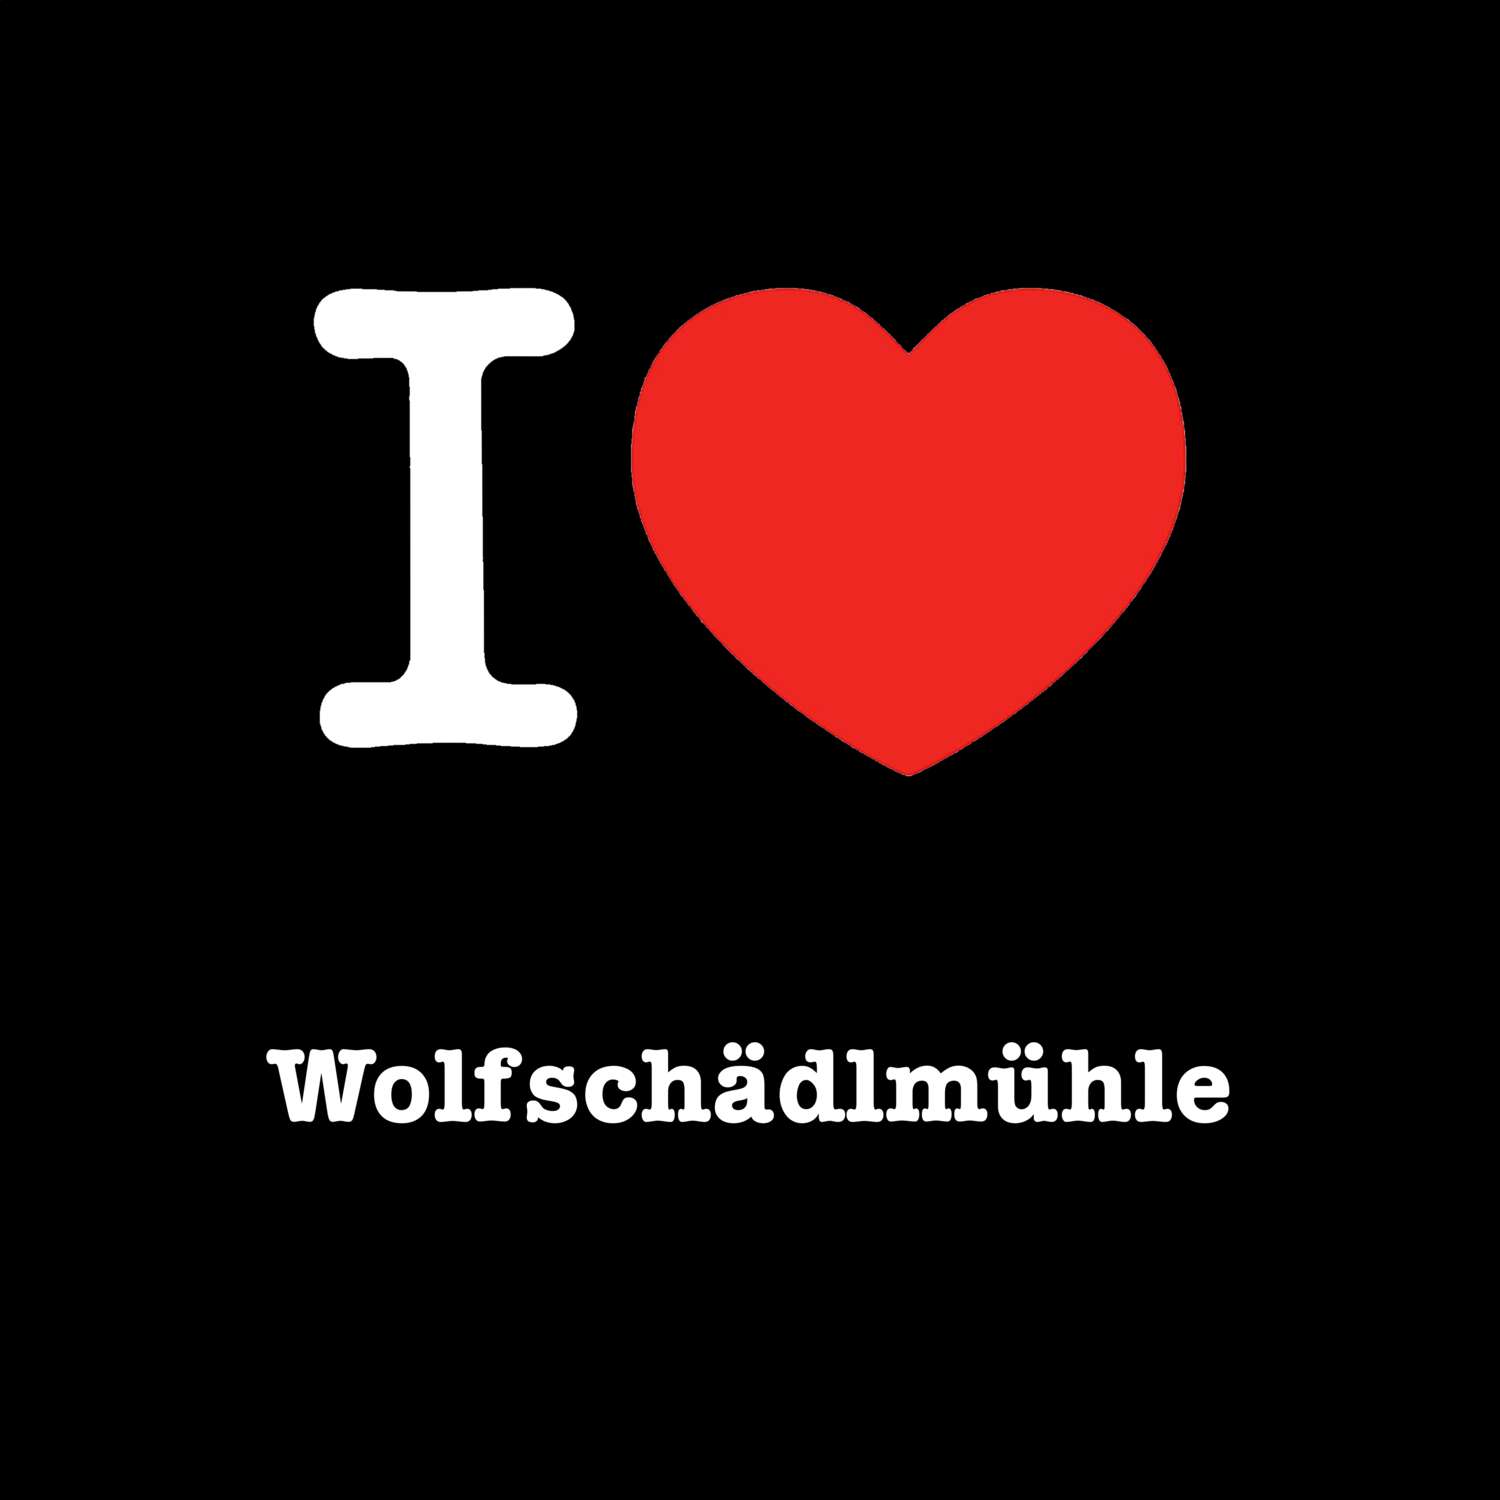 Wolfschädlmühle T-Shirt »I love«